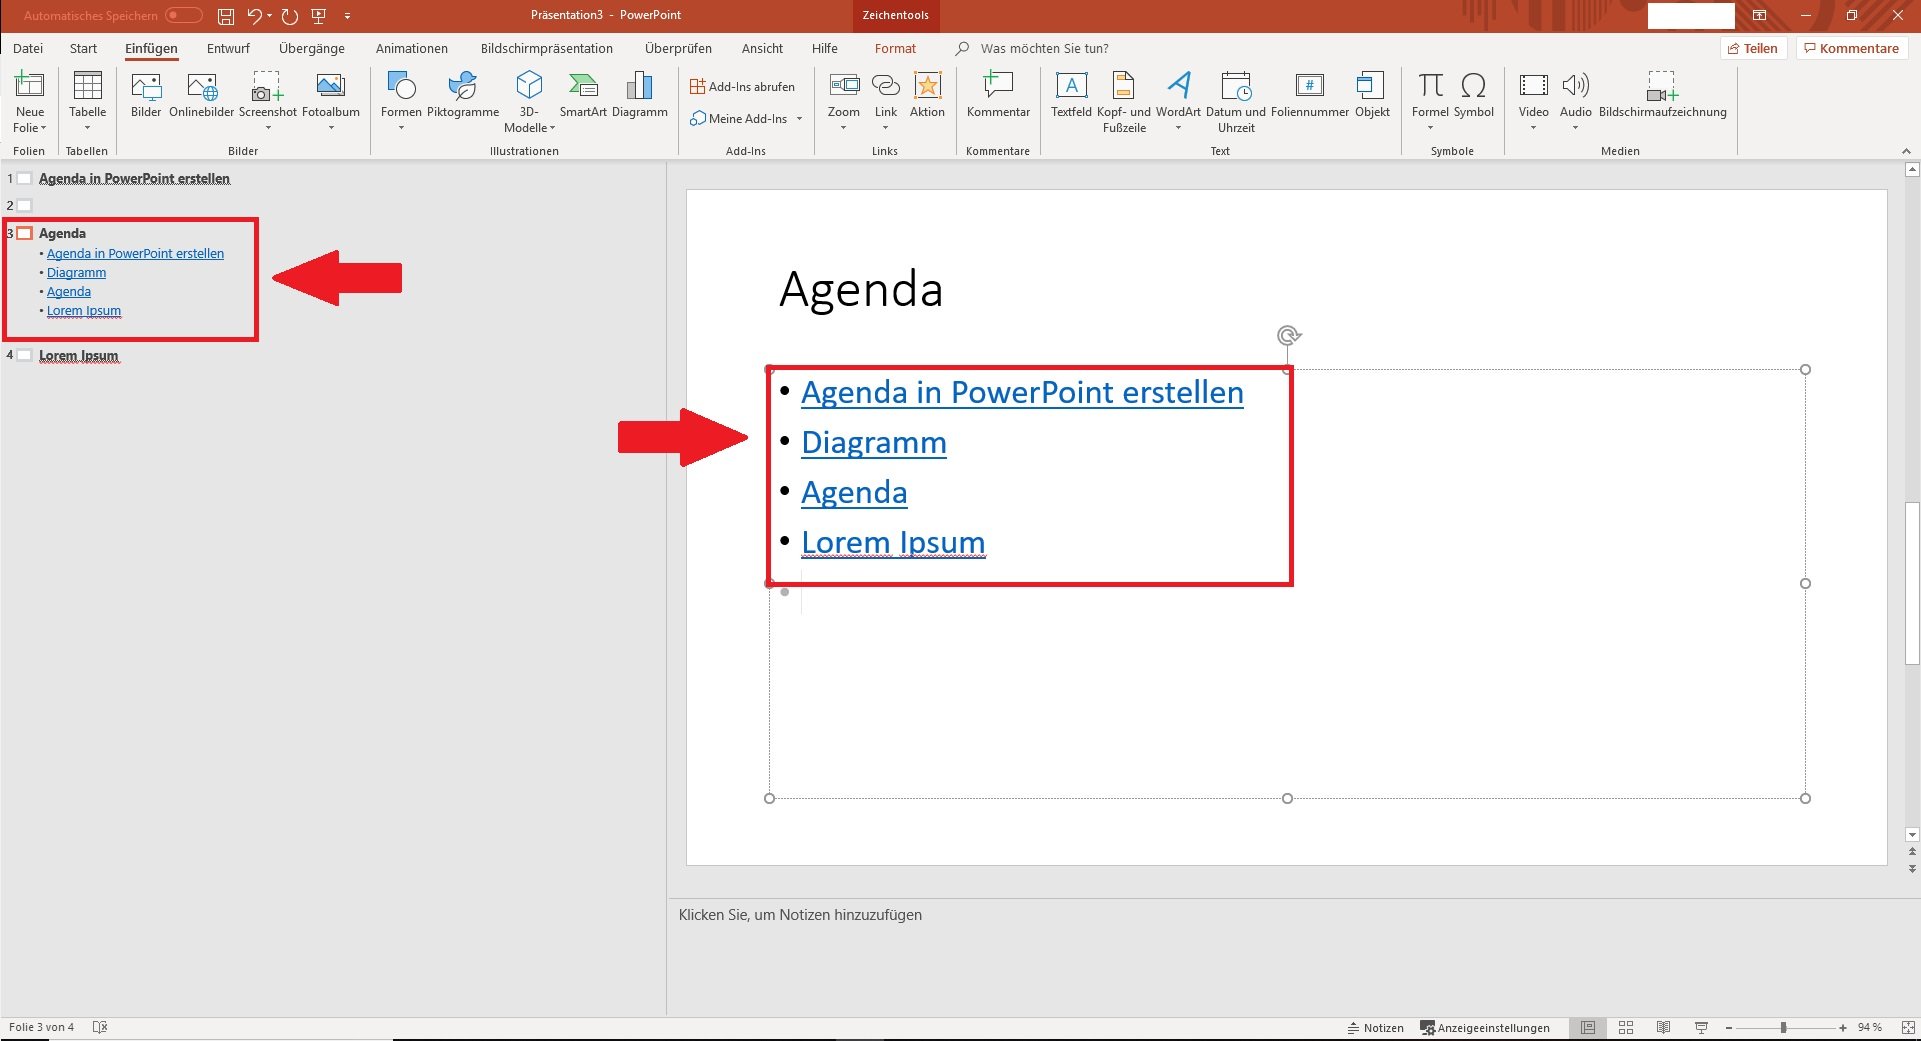 Agenda in PowerPoint erstellen